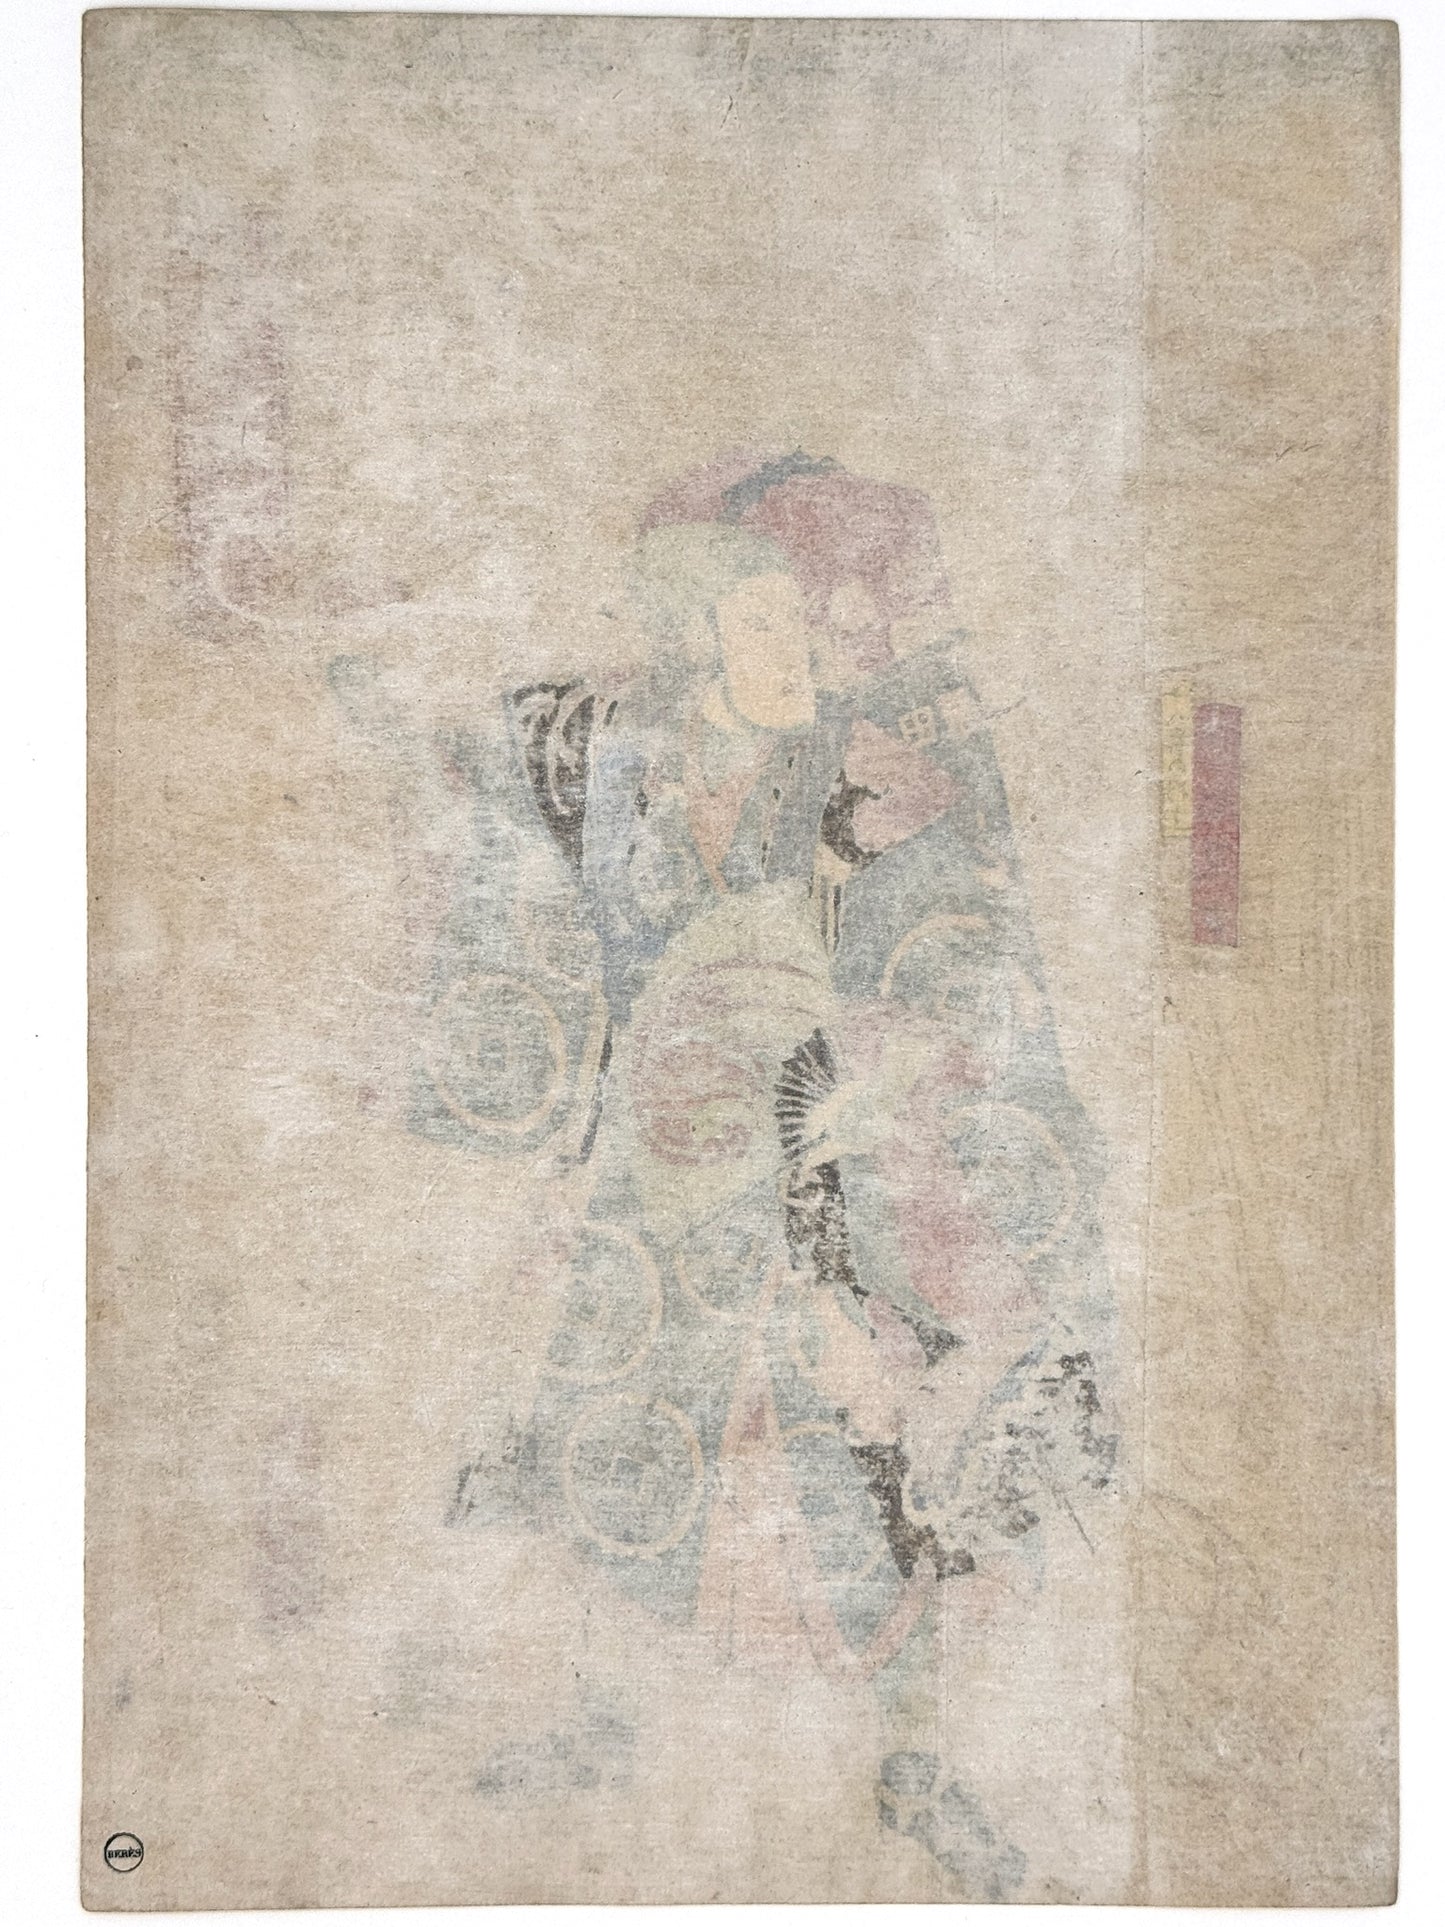 Estampe Japonaise de Kunisada | Le vendeur de médecine, Uiro Vpharmacien ambulant théatre kabuki dos